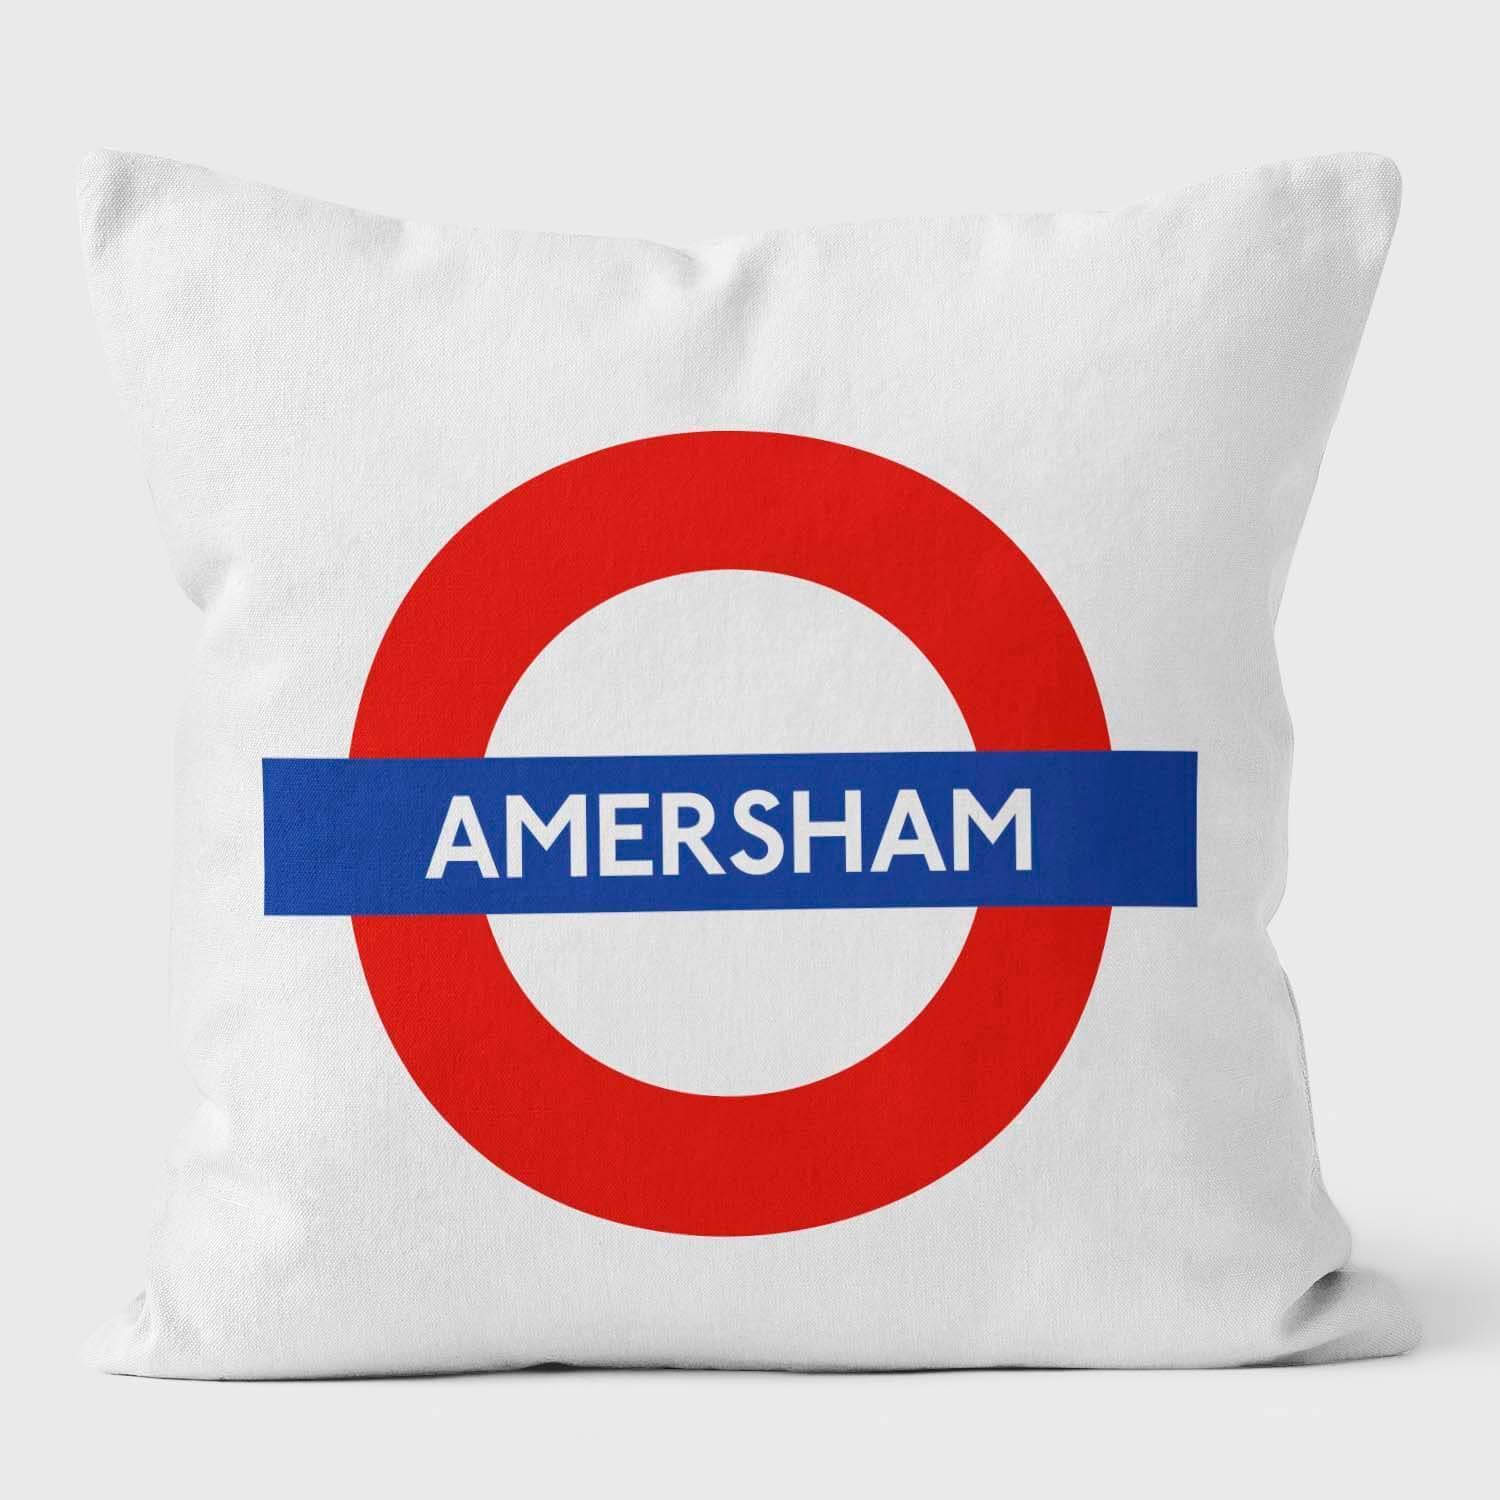 Amersham London Underground Tube Station Roundel Cushion - Handmade Cushions UK - WeLoveCushions